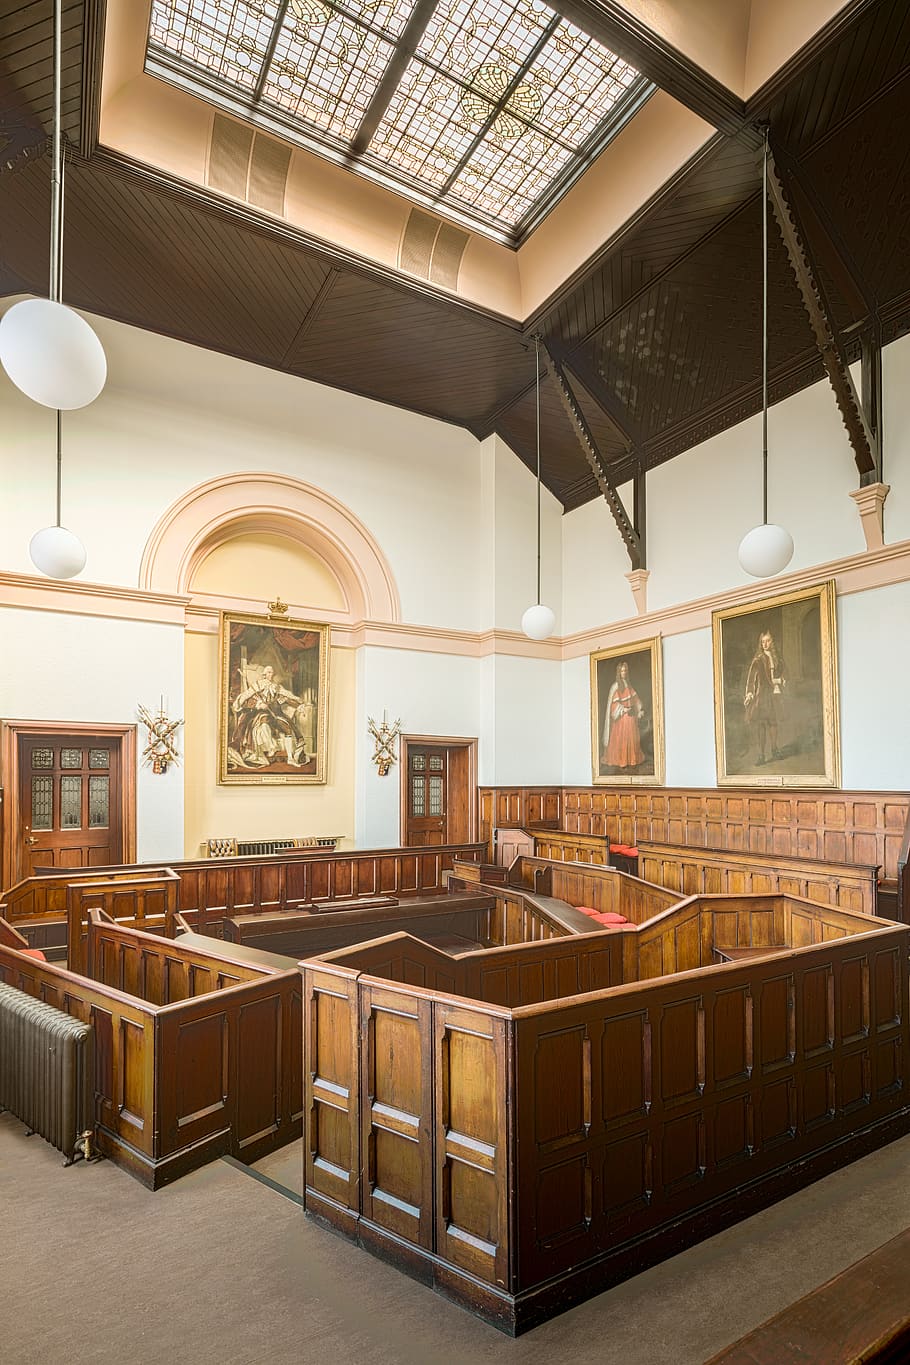 Chester Town Hall, tribunal, sala de audiencias, sala, juicio, senderos, abogado, juez, culpa, culpable